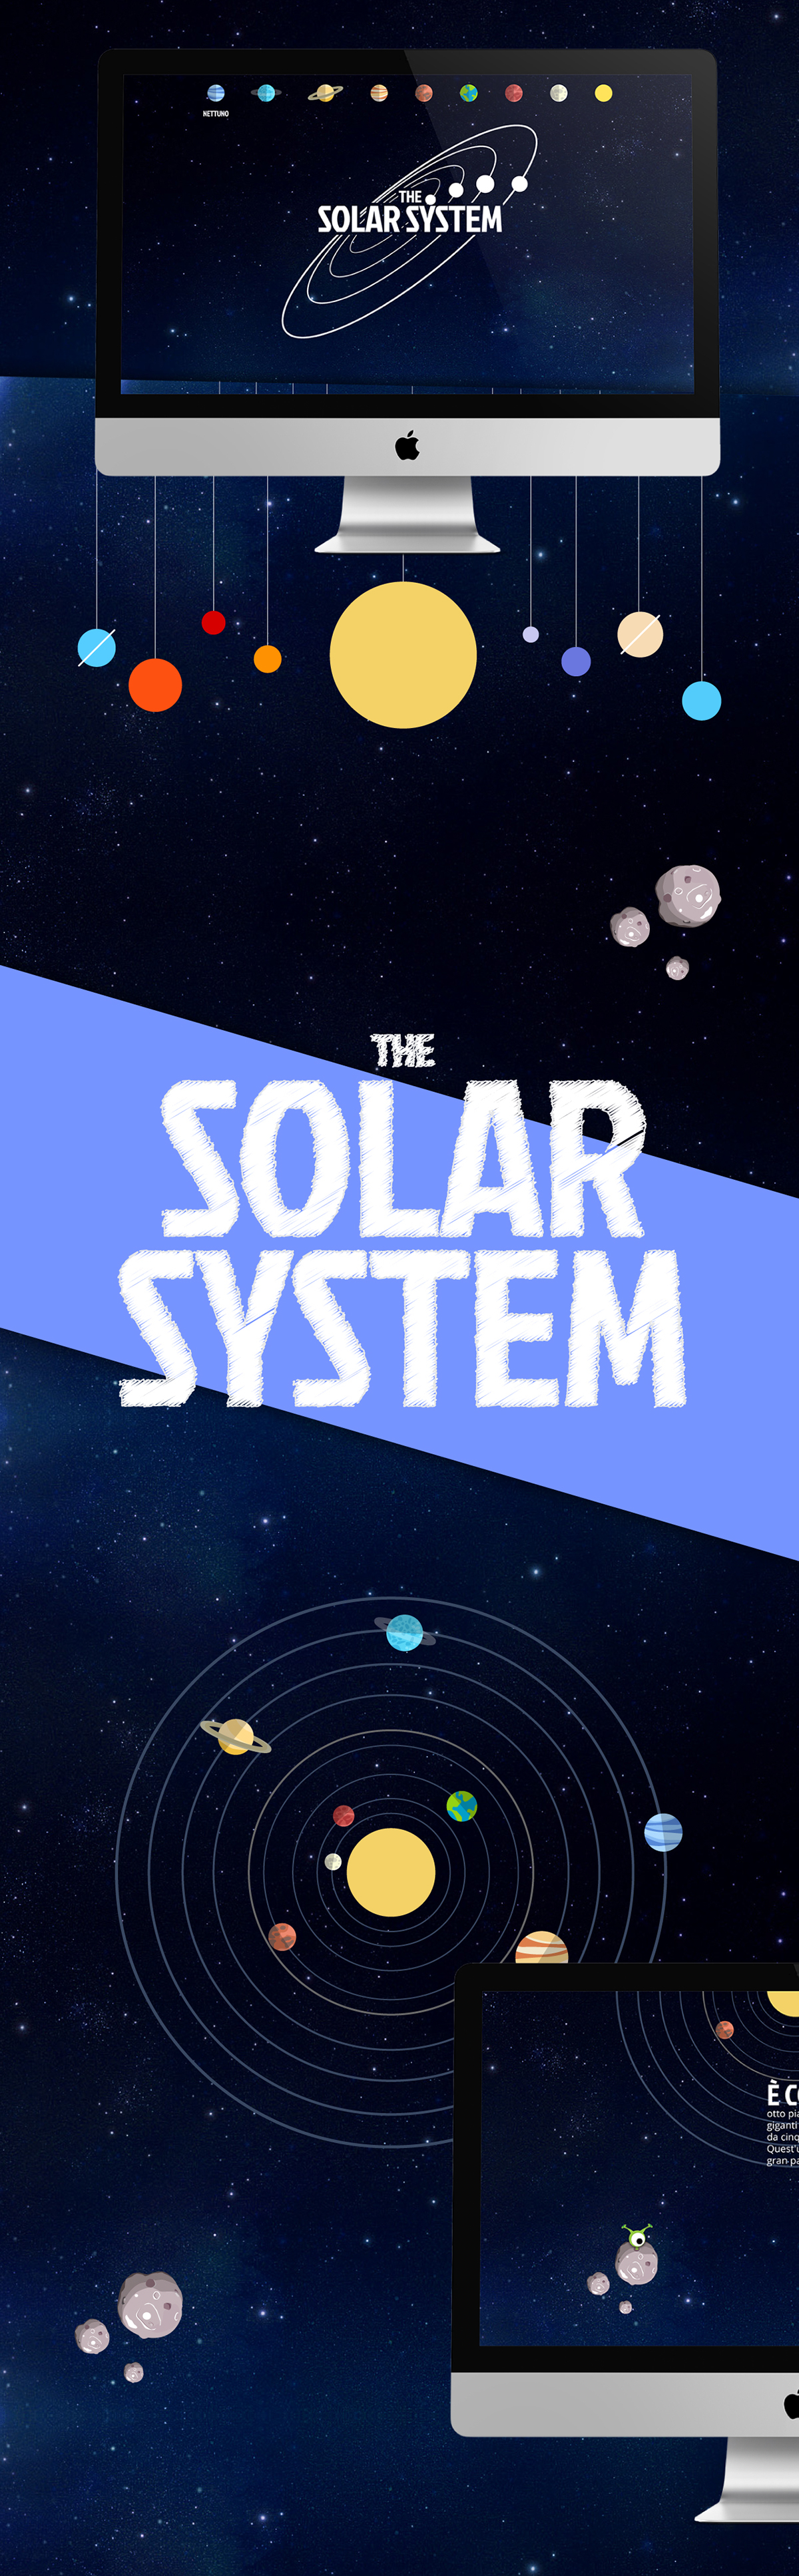 solar system sistema solare creative Planets pianeti illustrazione science astronomy